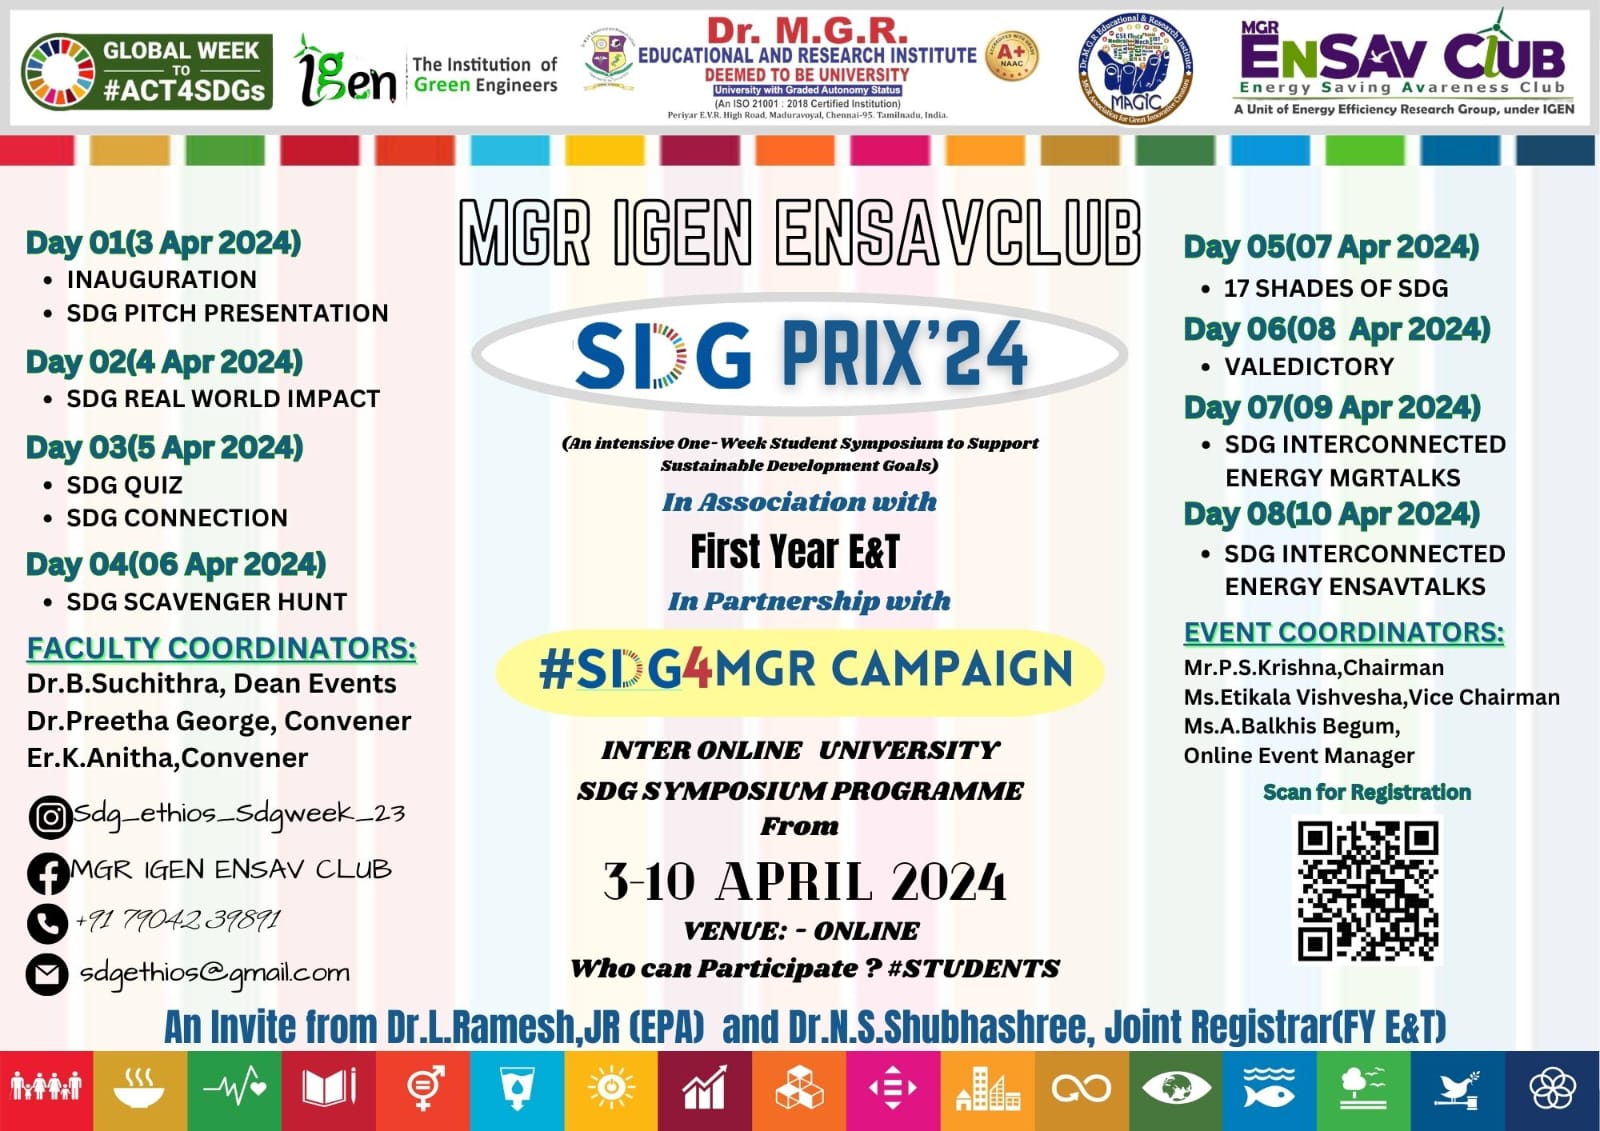 Registration Open for SDG PRIX 24